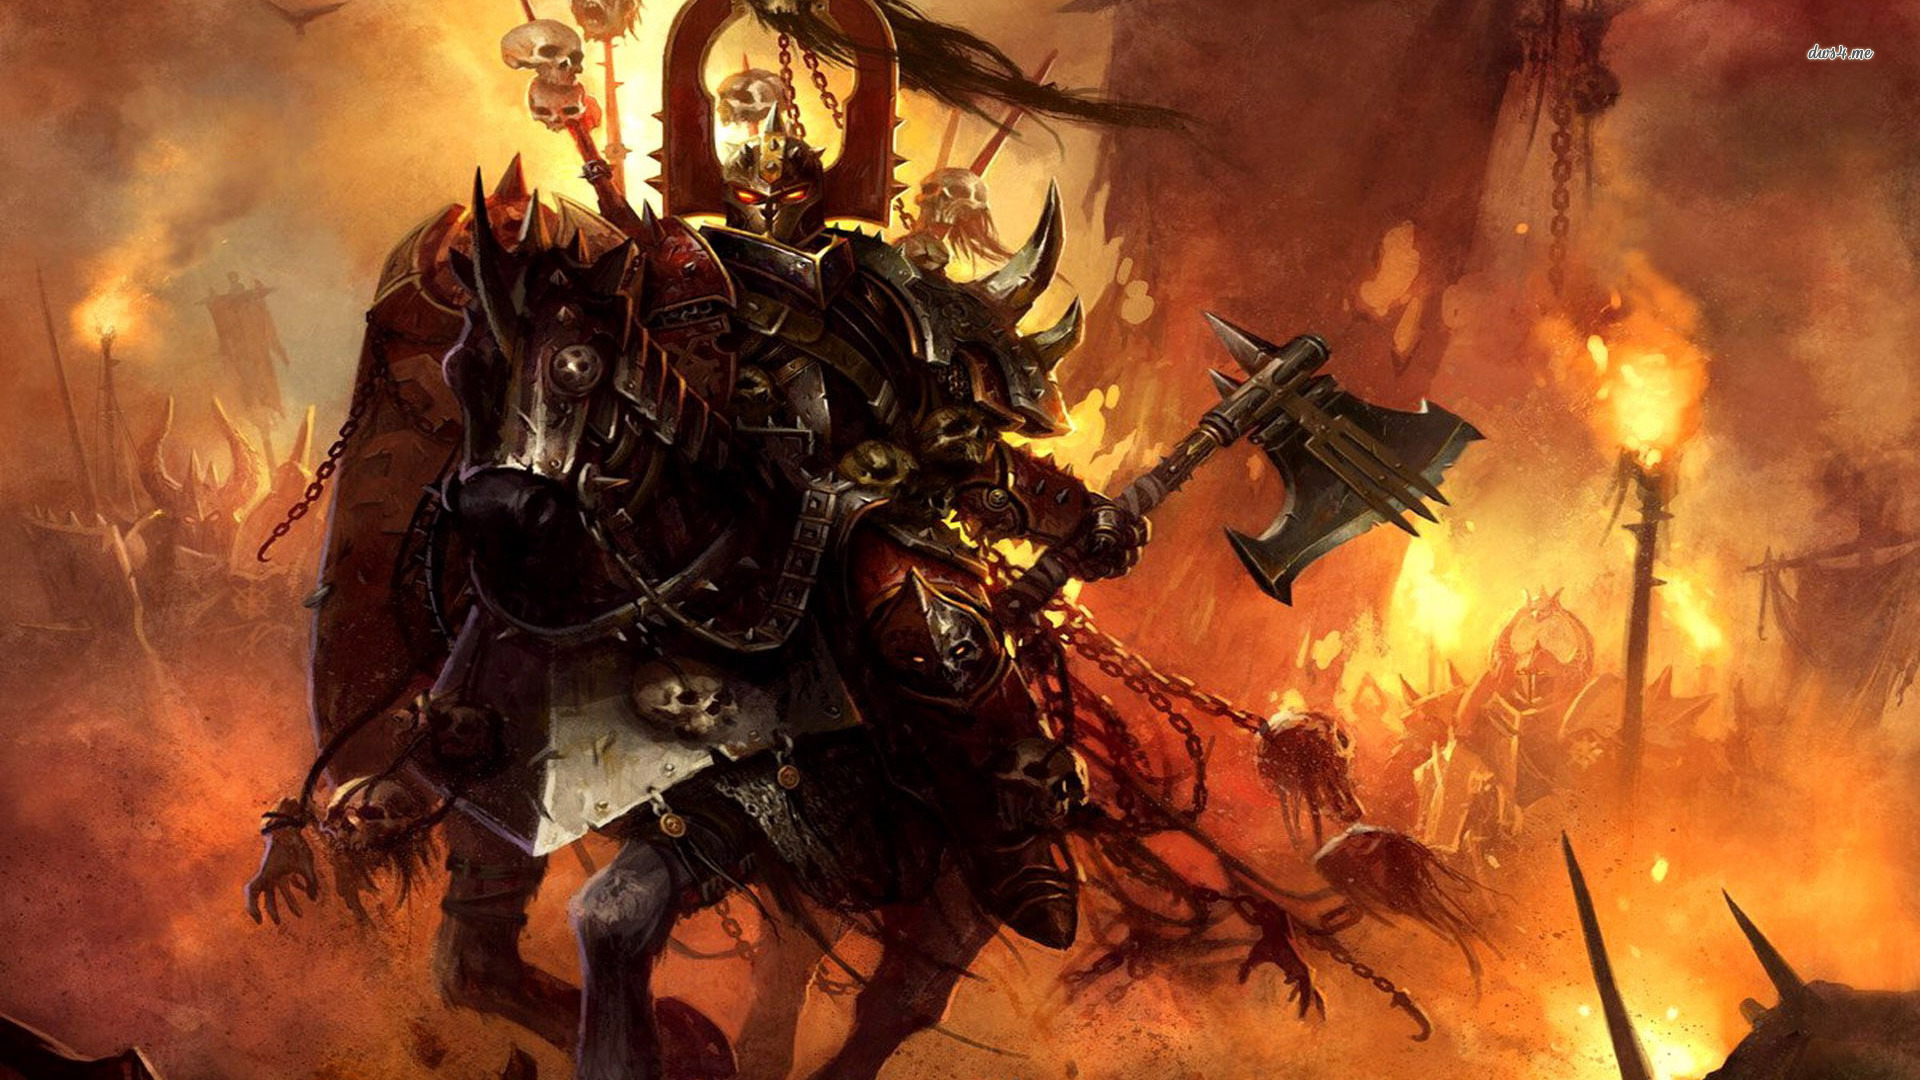 Warhammer Online Wallpaper Game